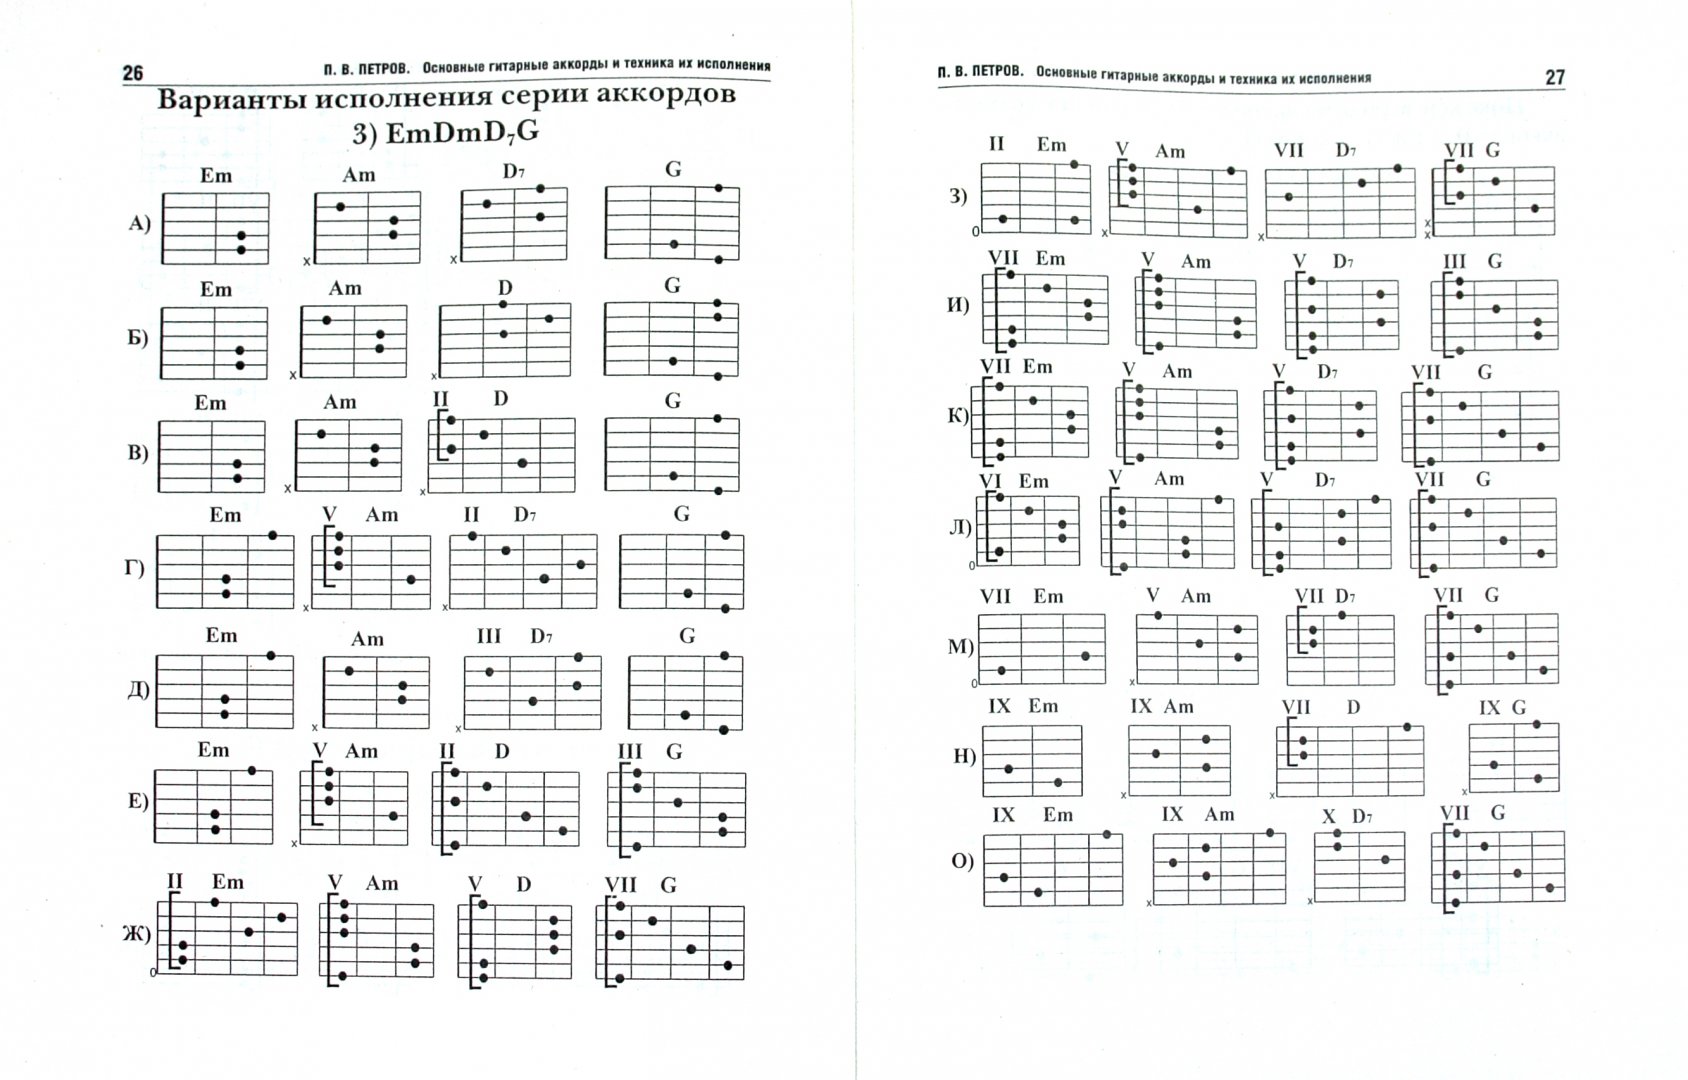 Таблица аккордов для начинающих. Таблица аккордов для гитары 6 струн для начинающих. Гитарные аккорды таблица для начинающих. Аккорды на 6 струнной гитаре. Таблица простых аккордов для гитары 6 струн.